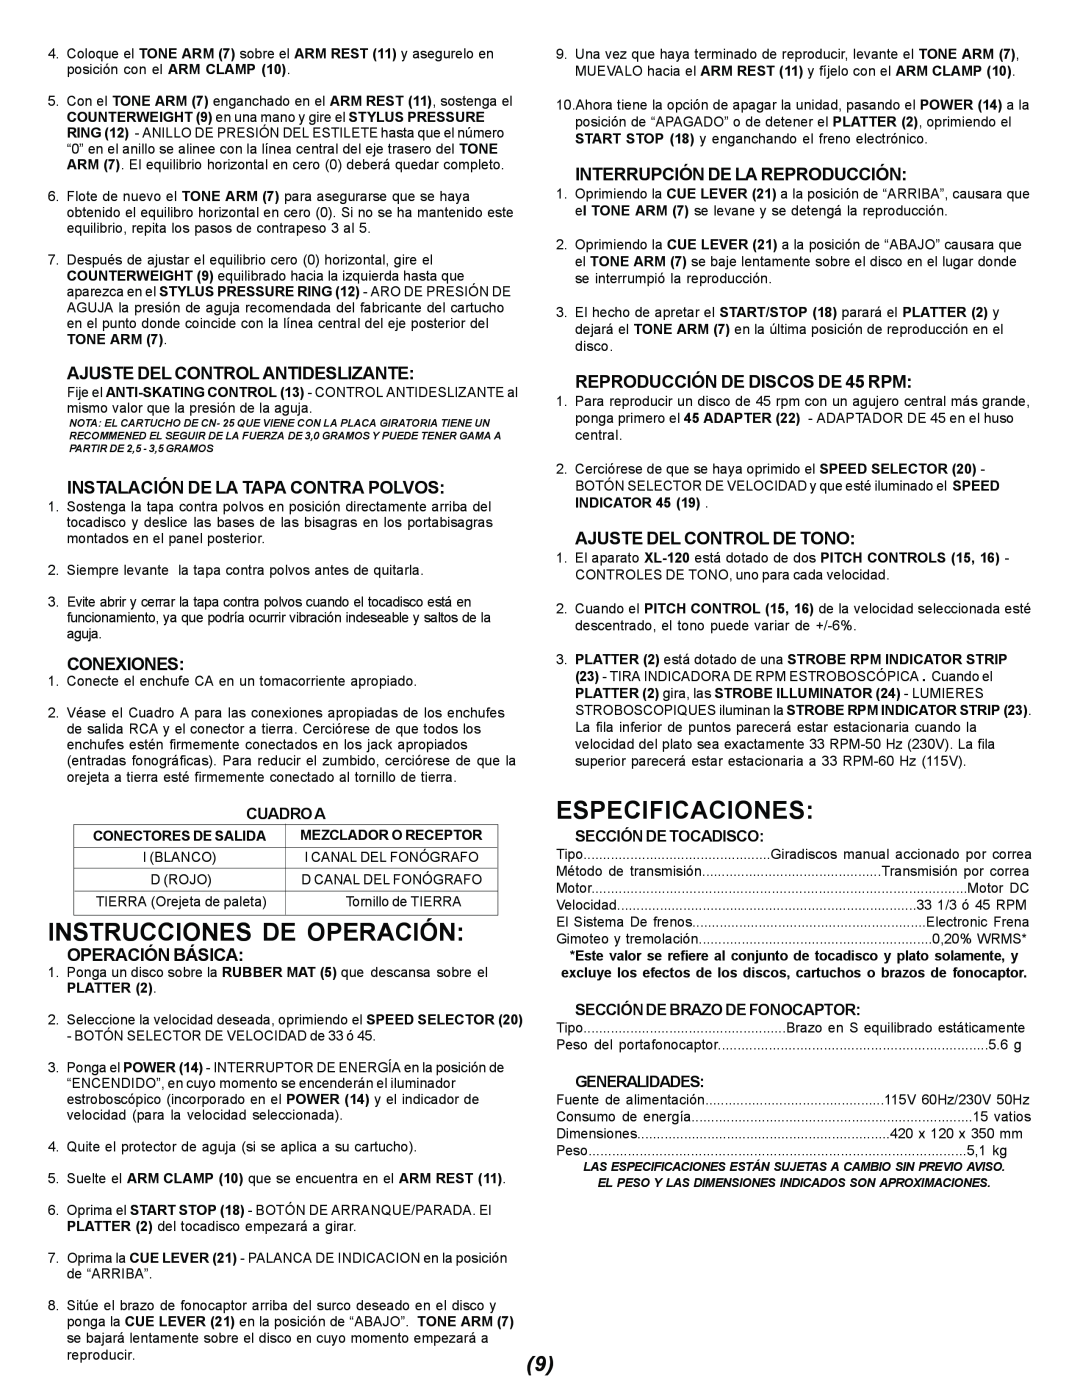 Gemini XL-120 manual Cuadroaespecificaciones, Instrucciones De Operación, Ajuste Del Control Antideslizante, Conexiones 